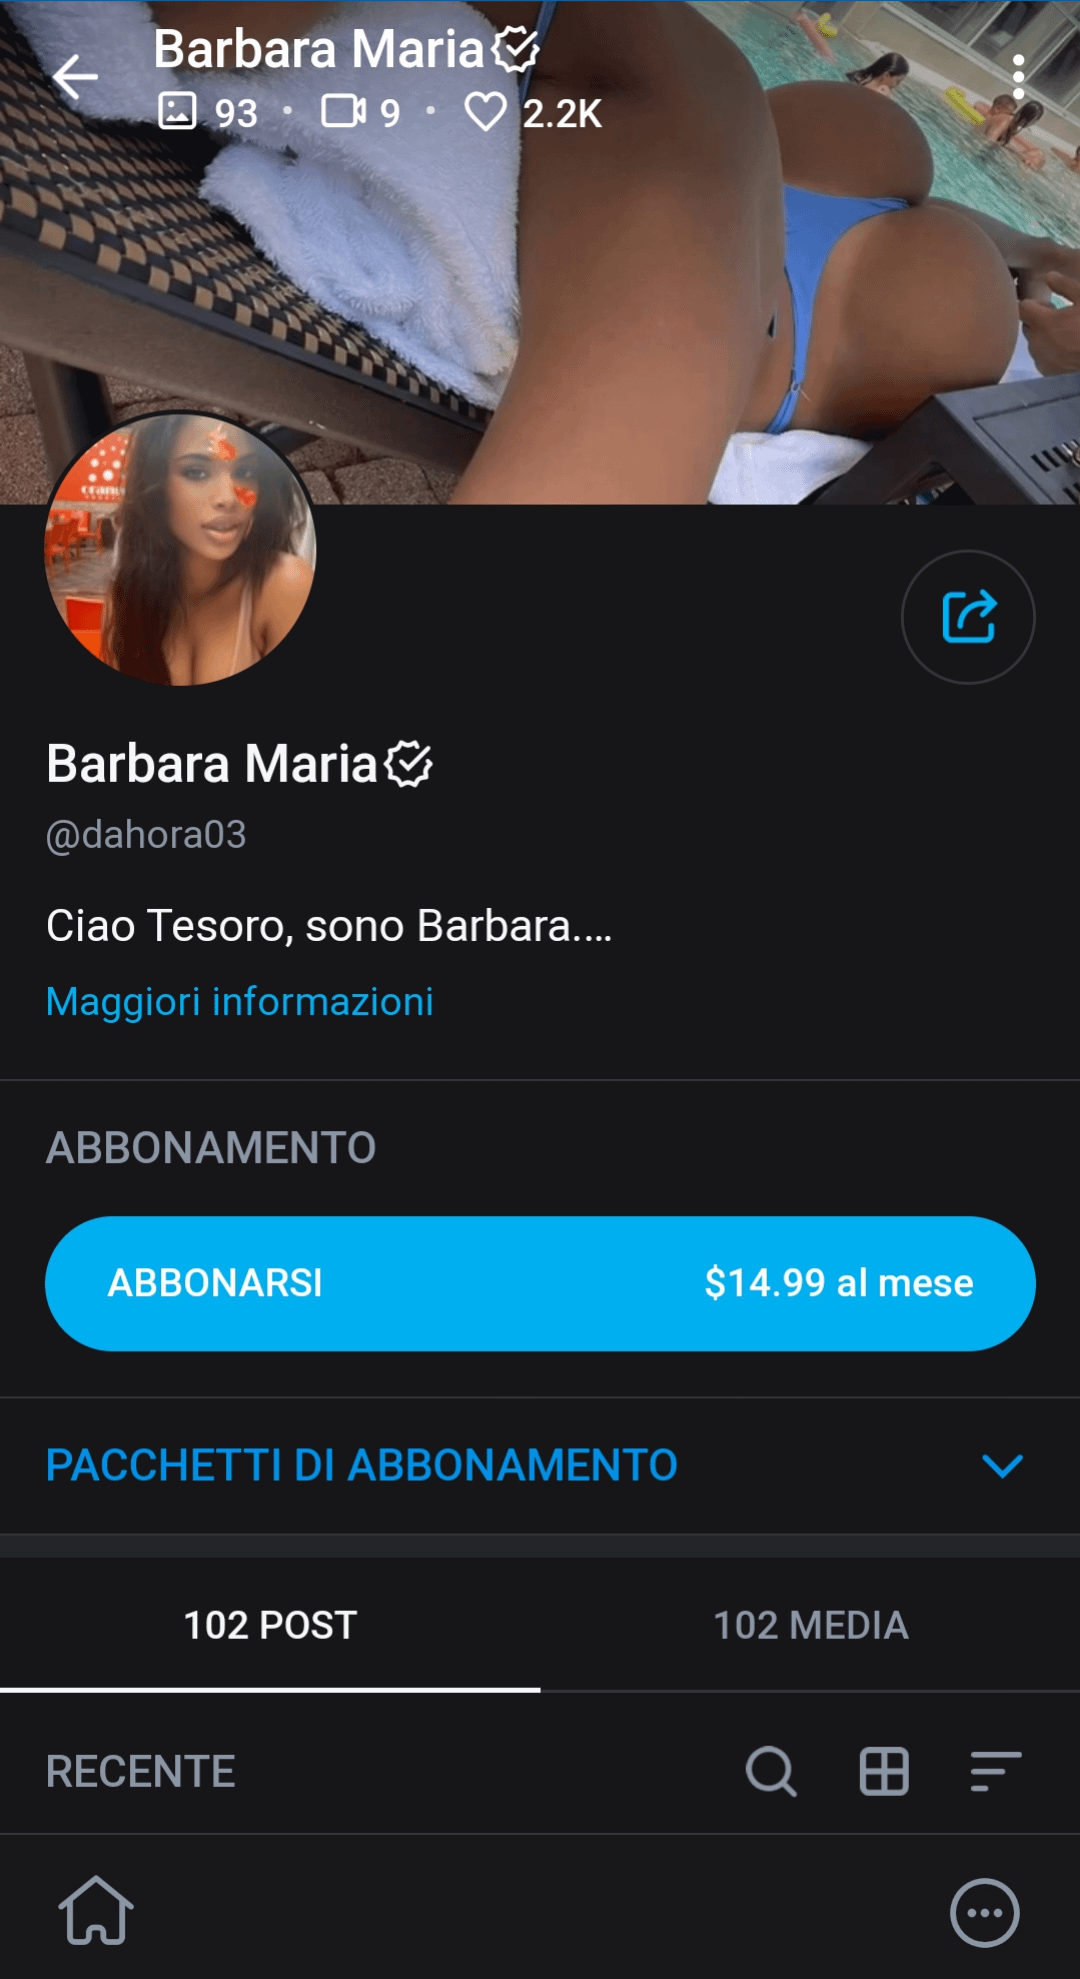 Dahora03 (Barbara Maria)